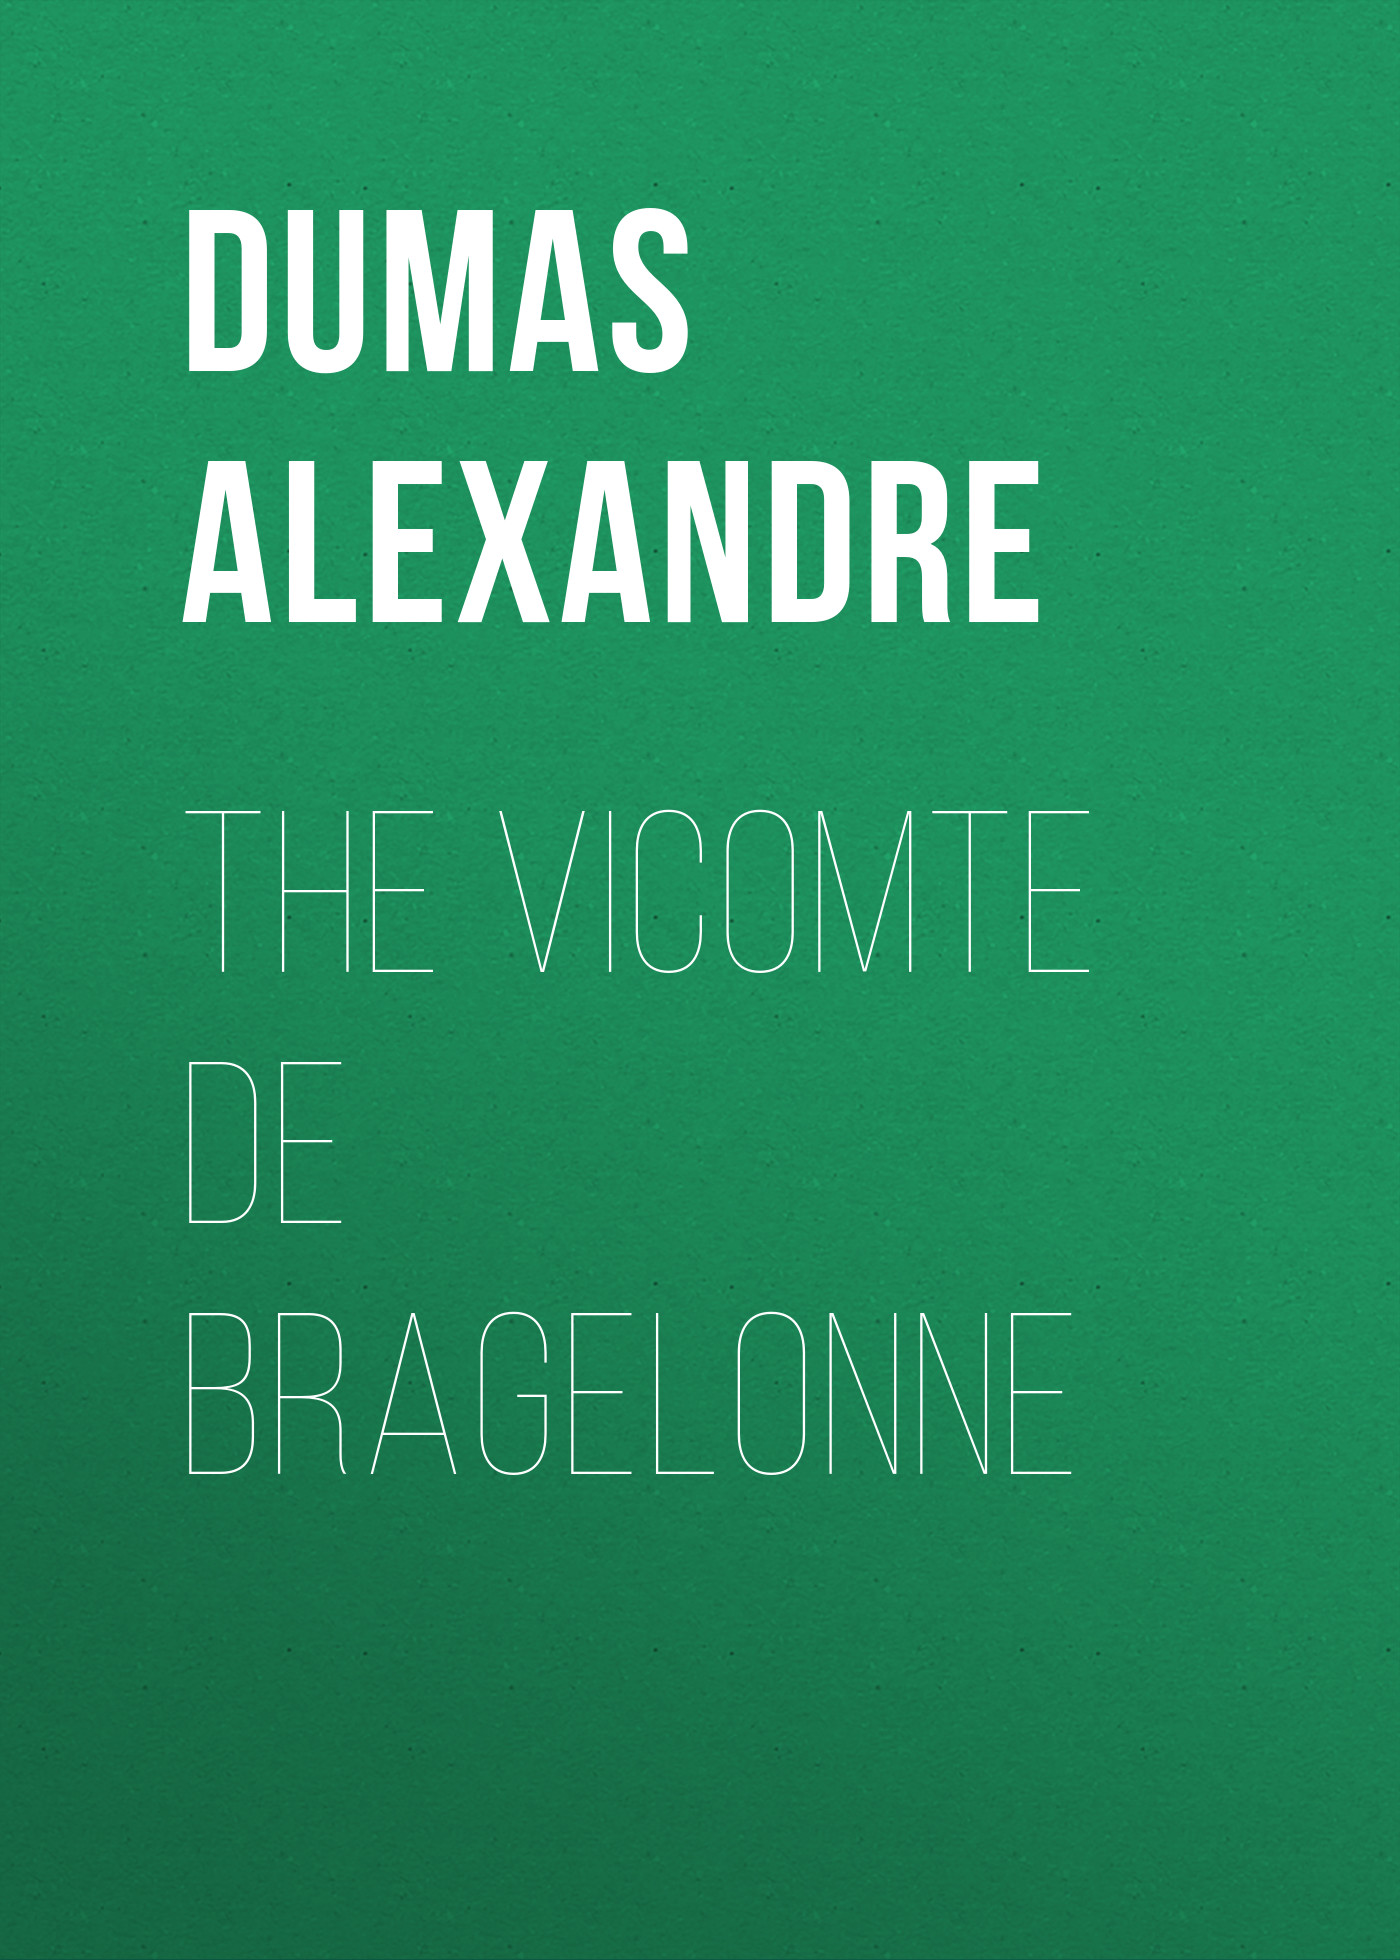 Книга The Vicomte De Bragelonne из серии , созданная Alexandre Dumas, может относится к жанру Литература 19 века, Зарубежная старинная литература, Зарубежная классика. Стоимость электронной книги The Vicomte De Bragelonne с идентификатором 25202375 составляет 0 руб.